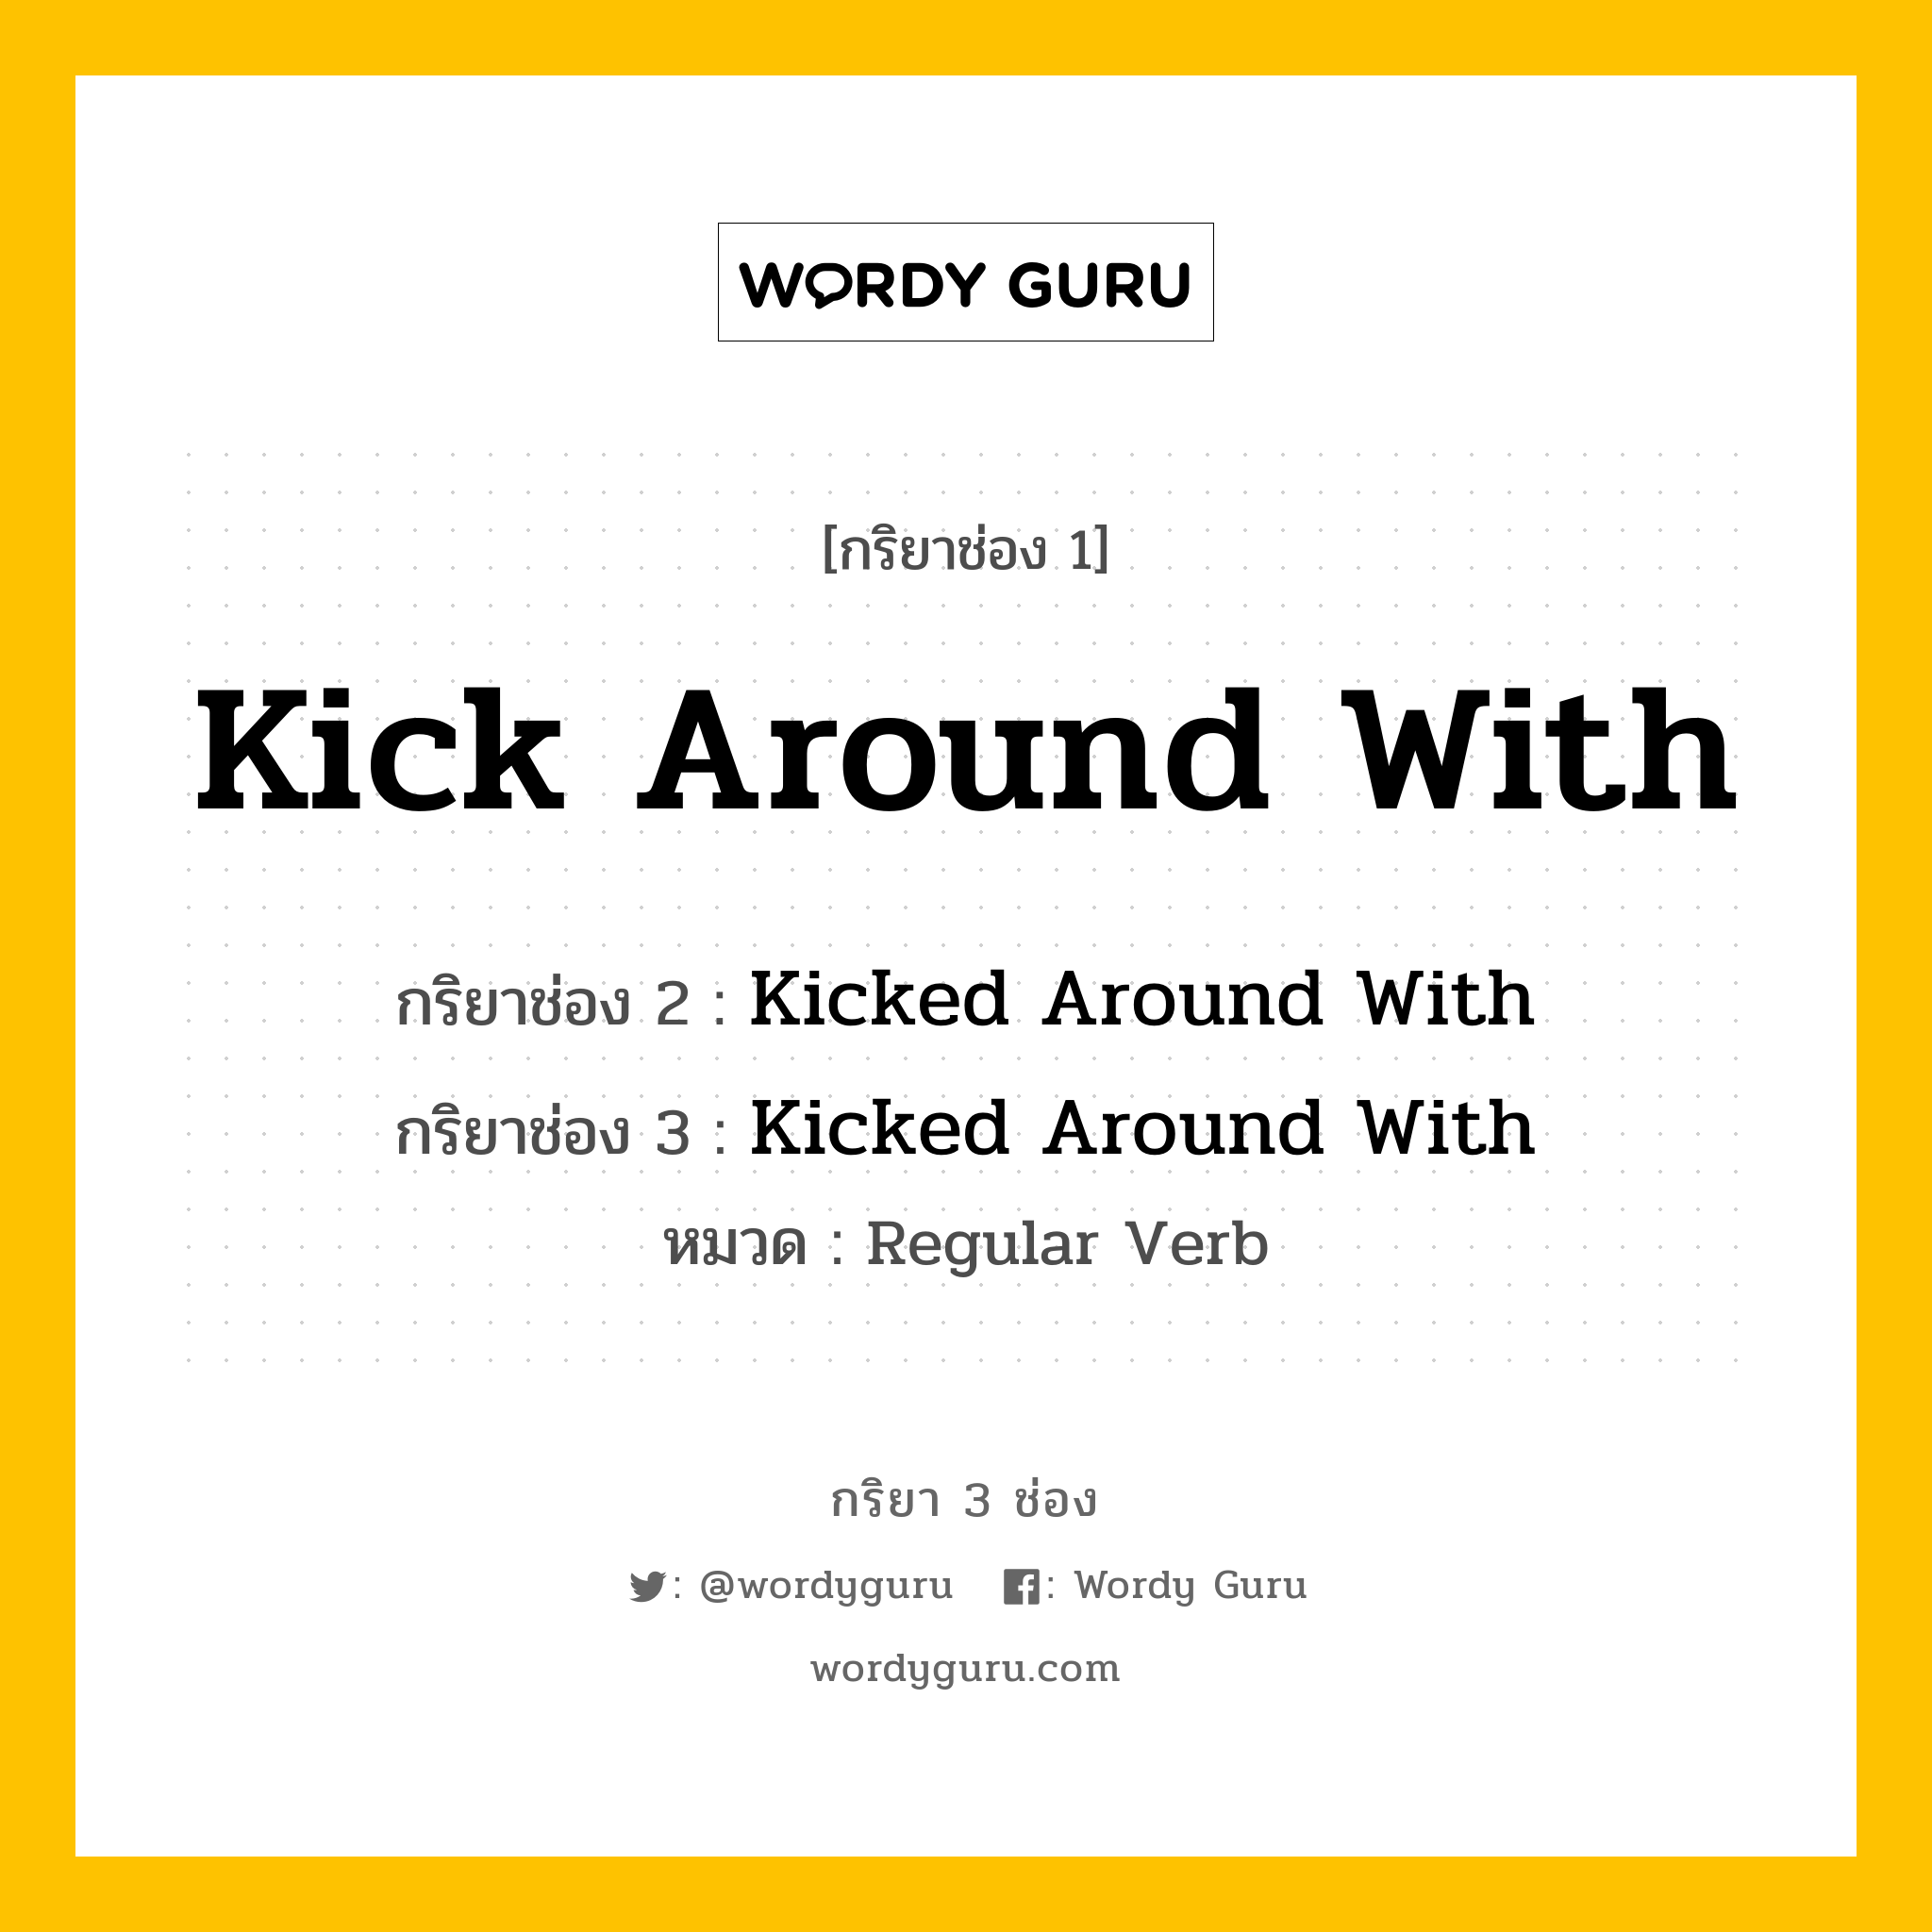 กริยา 3 ช่อง: Kick Around With ช่อง 2 Kick Around With ช่อง 3 คืออะไร, กริยาช่อง 1 Kick Around With กริยาช่อง 2 Kicked Around With กริยาช่อง 3 Kicked Around With หมวด Regular Verb หมวด Regular Verb